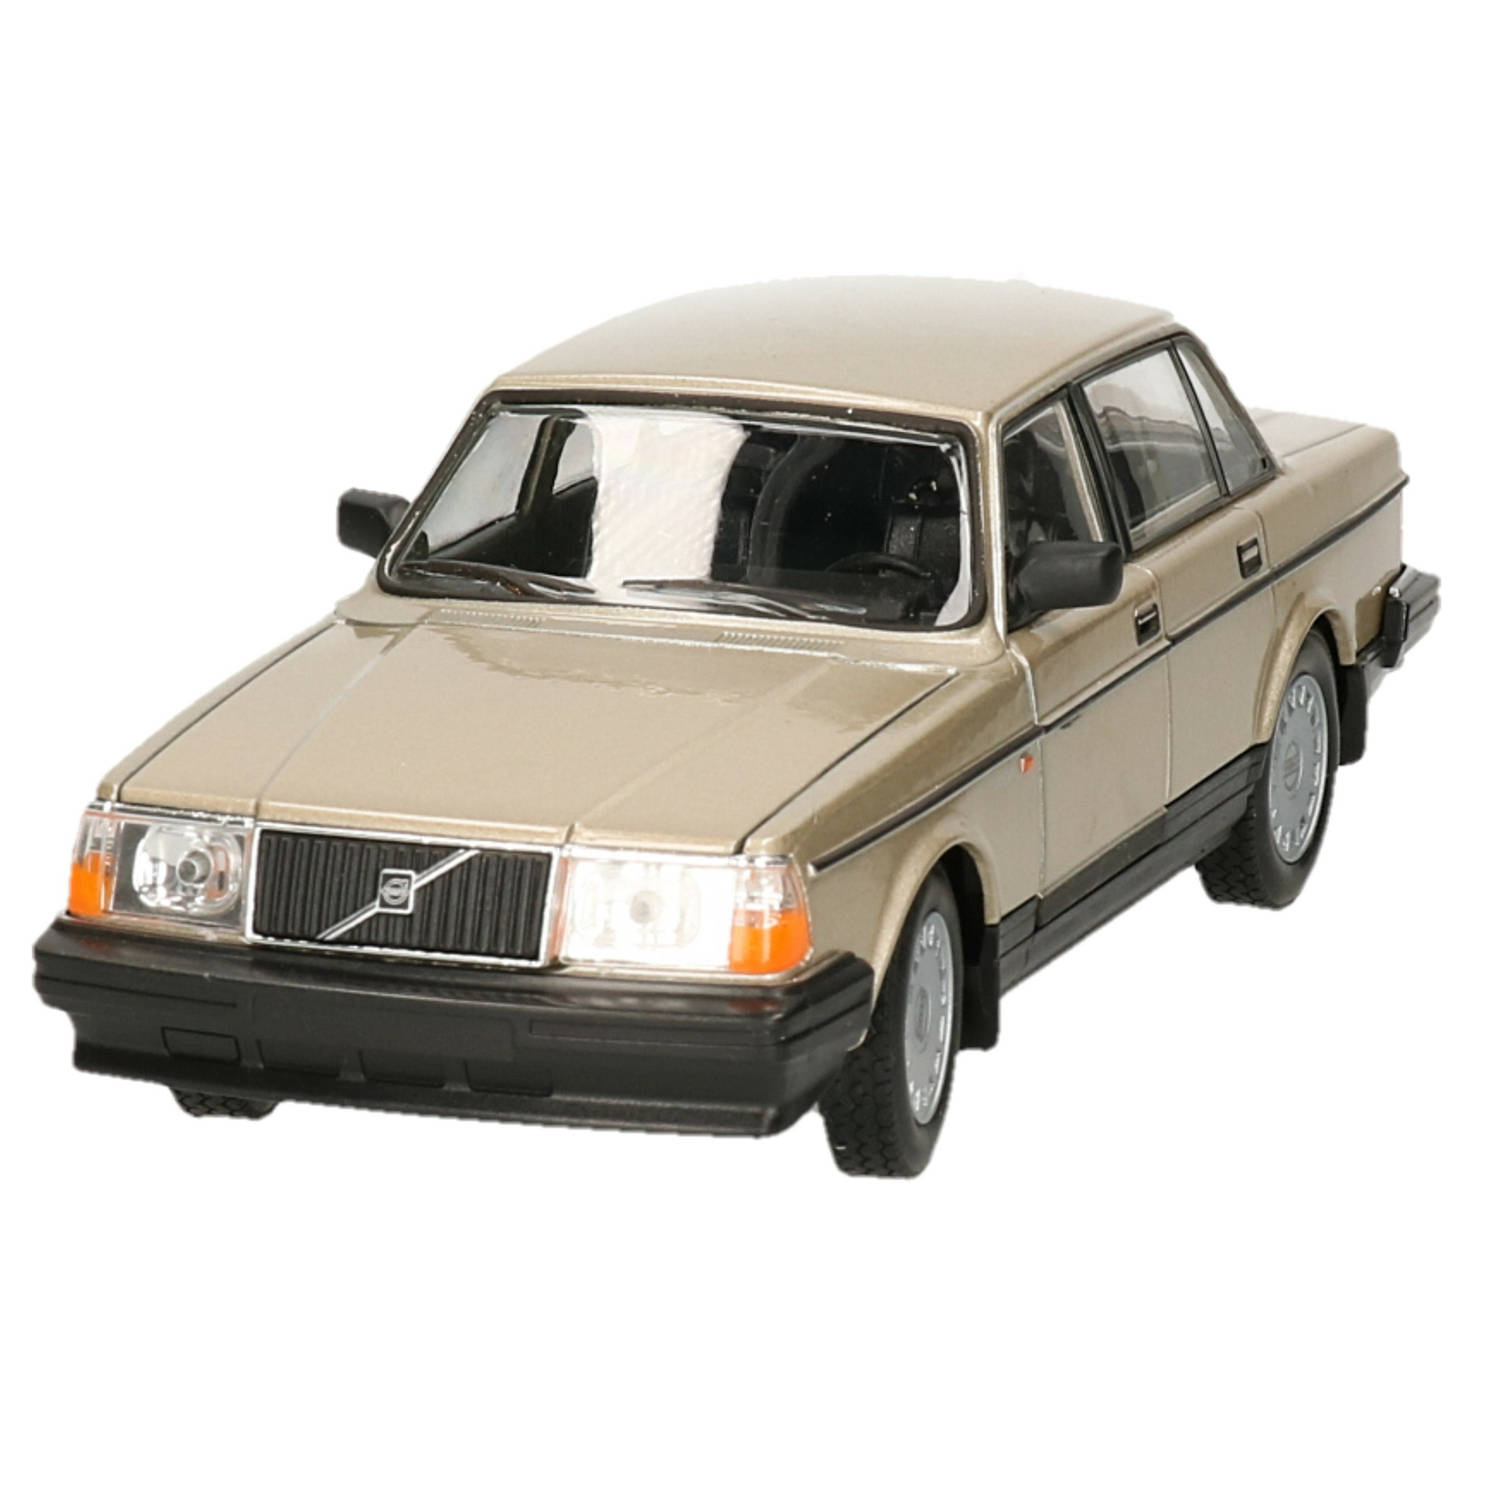 Modelauto-speelgoedauto Volvo 240GL 1986 schaal 1:24-20 x 7 x 6 cm Speelgoed auto's